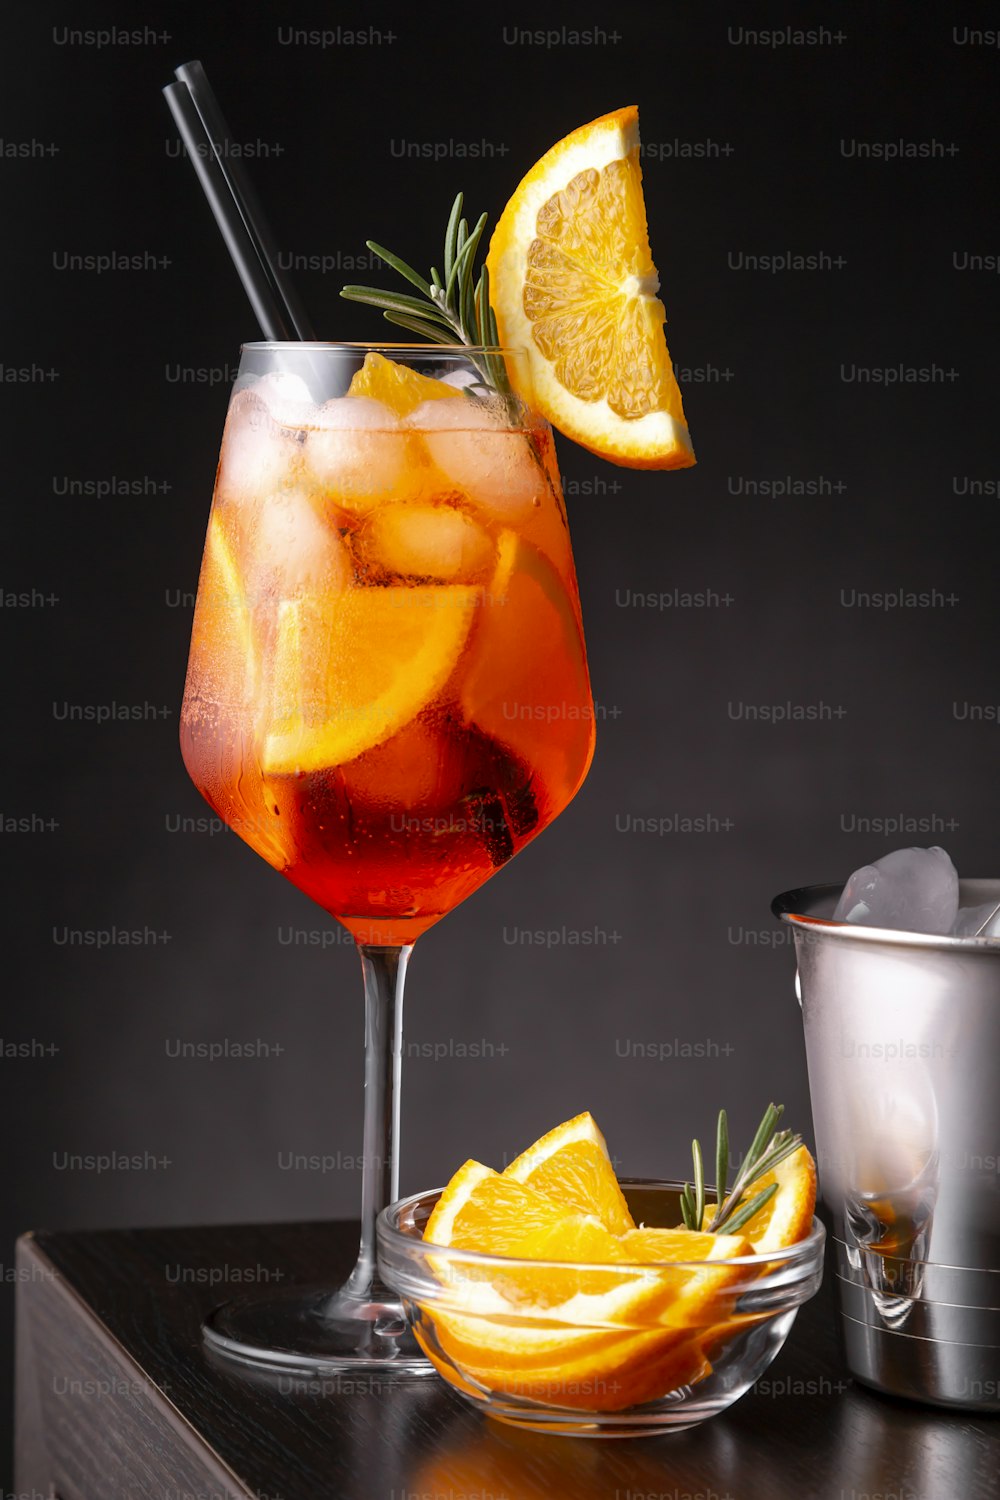 Coquetel Spritz servido em uma taça de vinho com muito gelo, decorado com fatia de laranja e ramo de alecrim, colocado em um balcão de bar